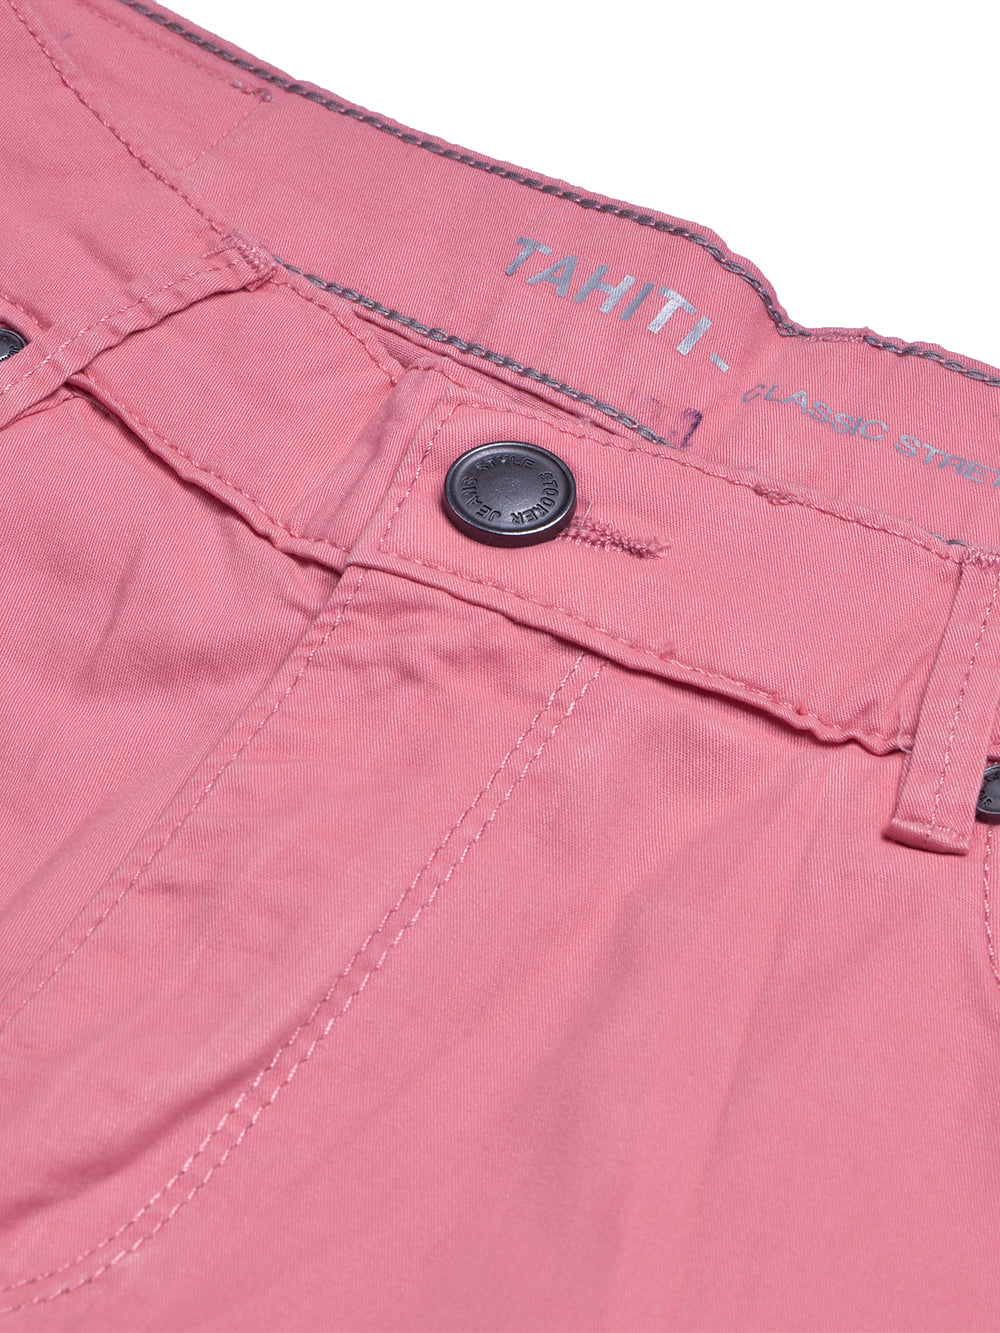 Stooker Cotton Denim Capri For Women-Pink-BE1270/BR13514